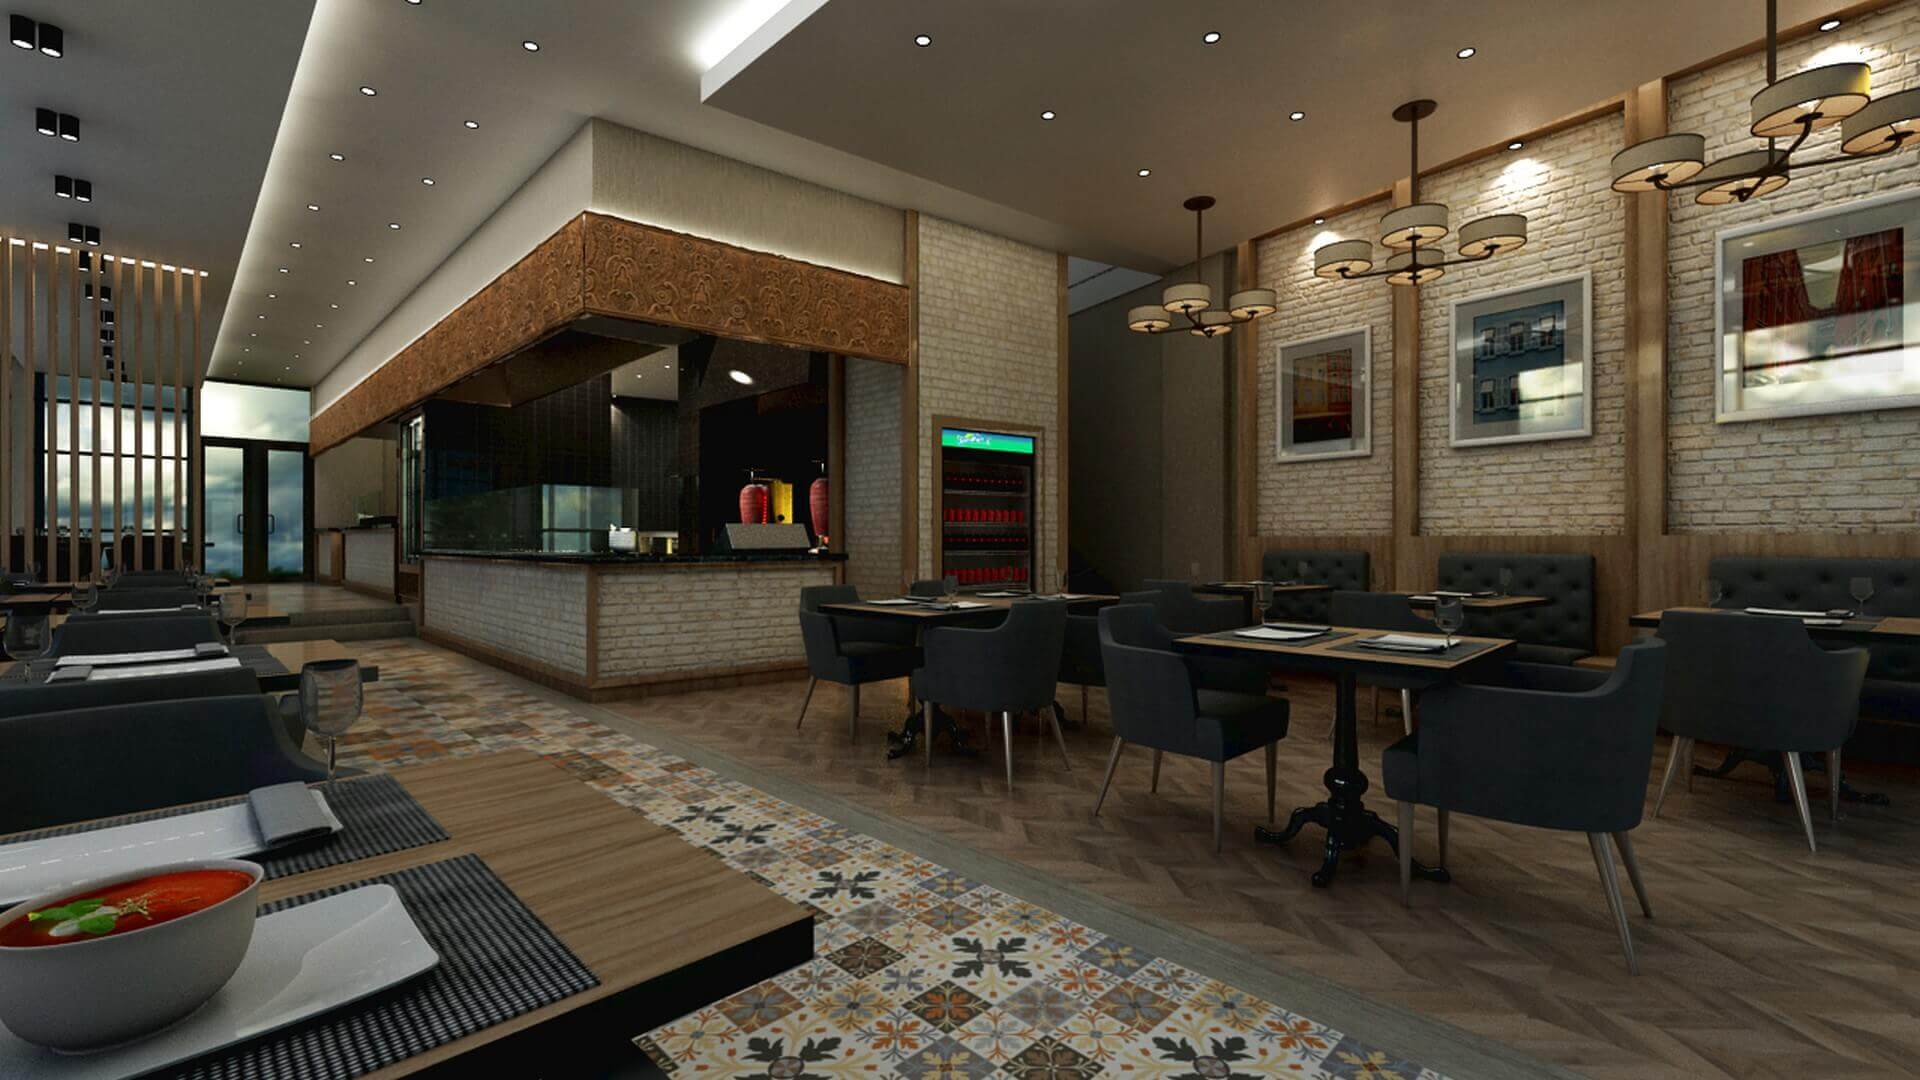  restaurant interior design